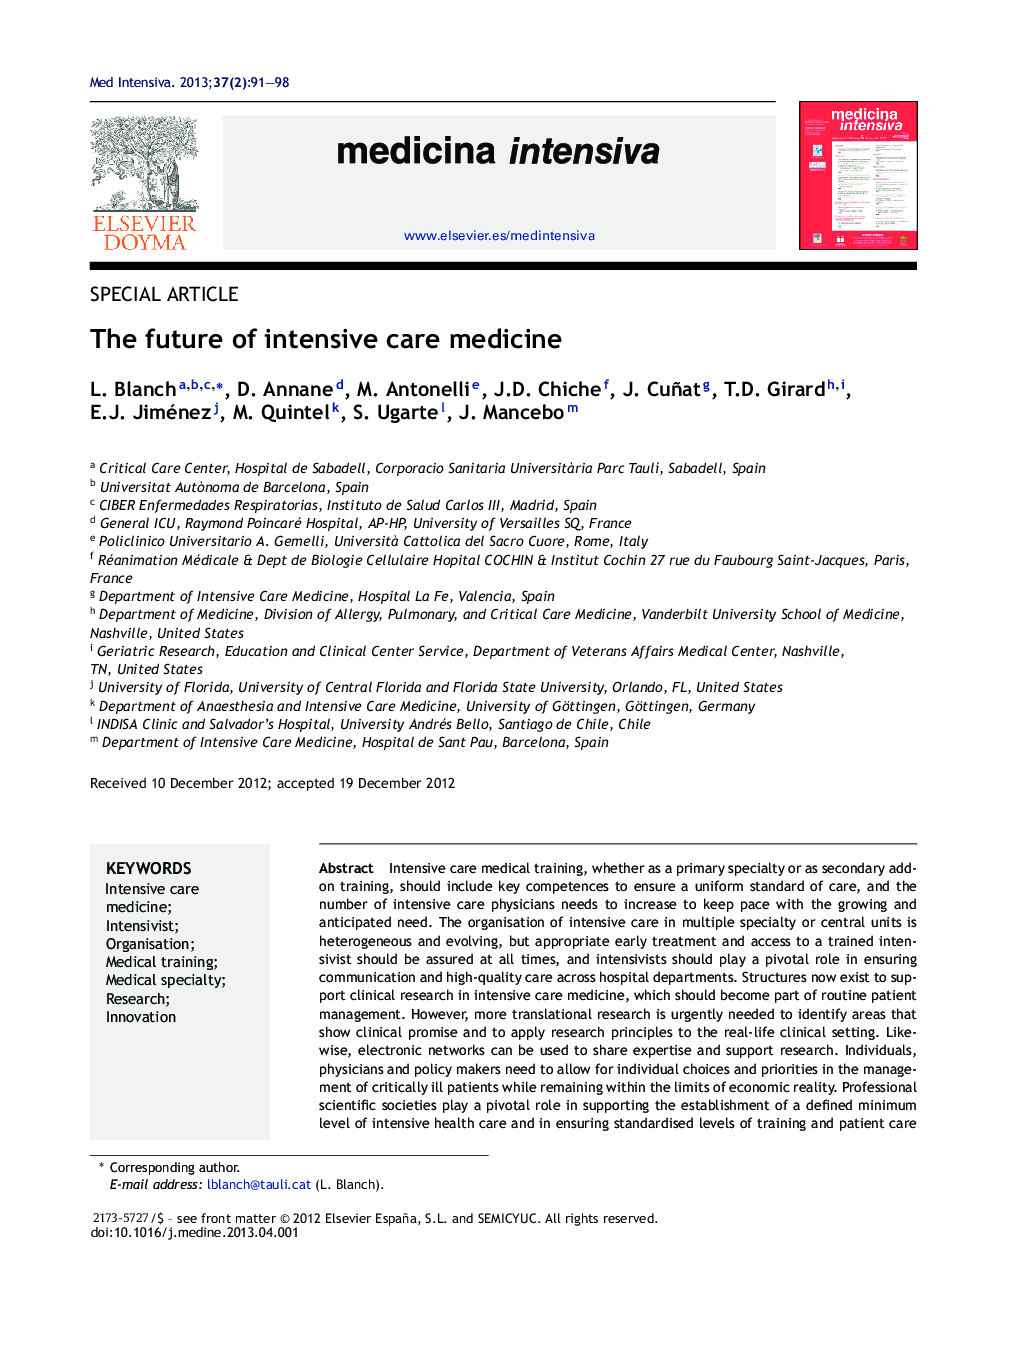 The future of intensive care medicine